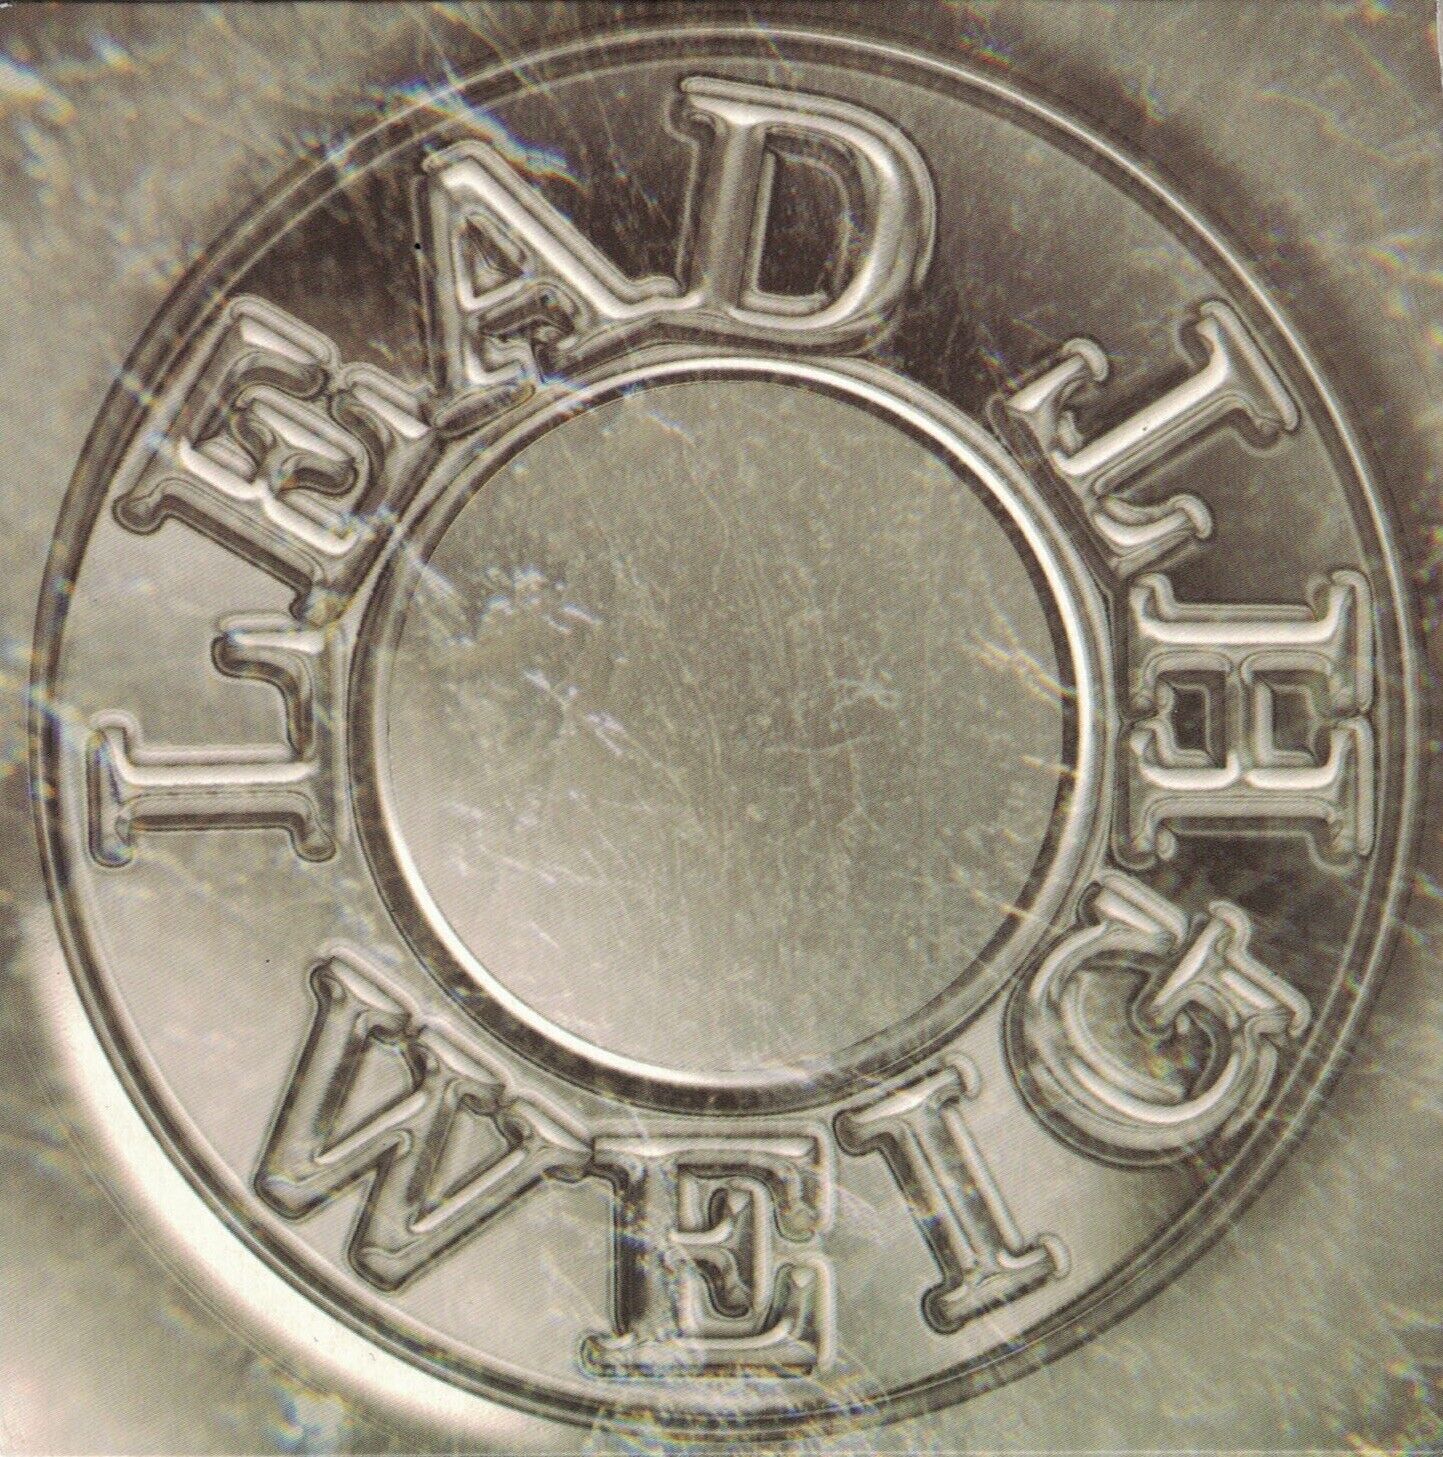 Lead Weight CD 2002 Compilation Cardboard-Sleeve 4 Bonus Tracks NWOBHM Jaguar